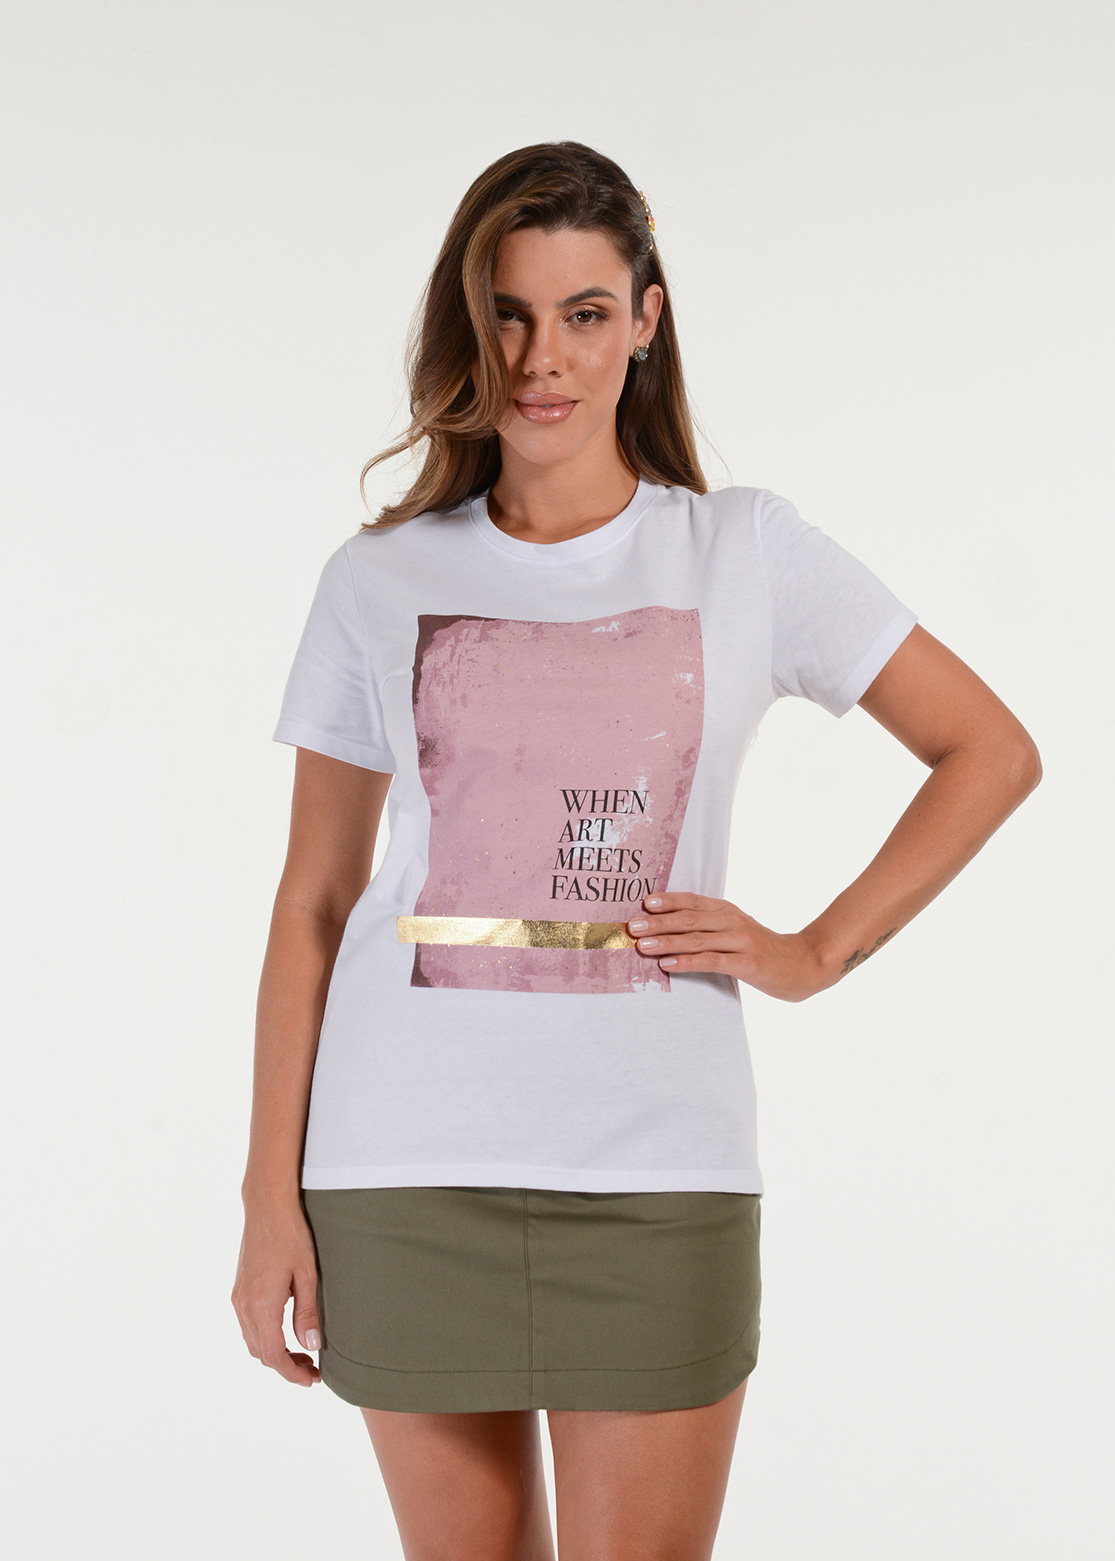 Wwwxxen - Camiseta Art Fashion - Billie Combina Com VocÃª!